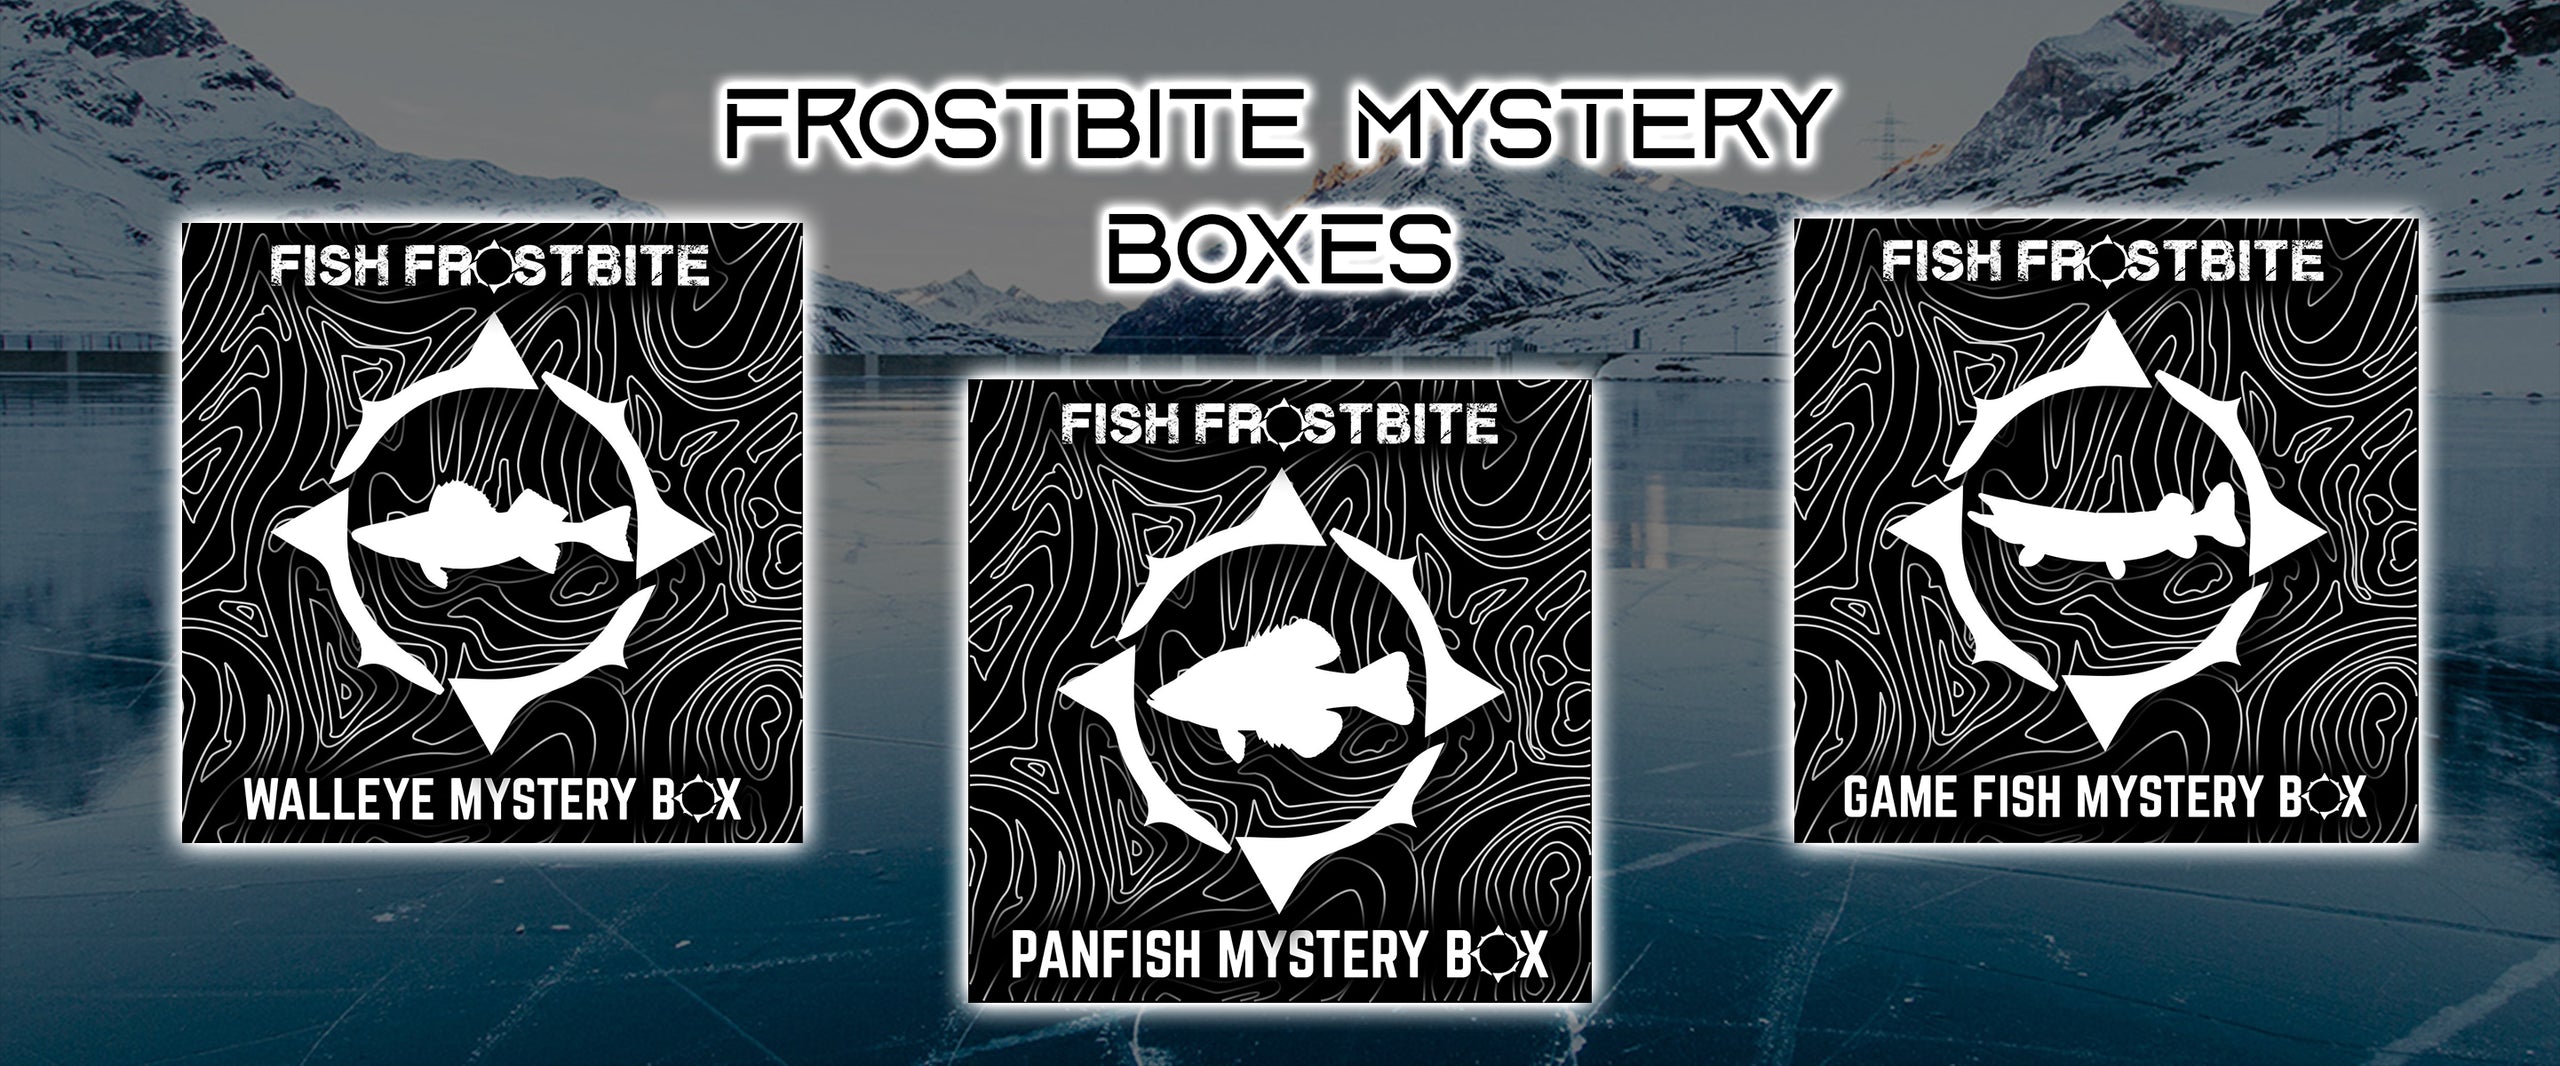 Fish Frostbite Canada – Frostbite Canada